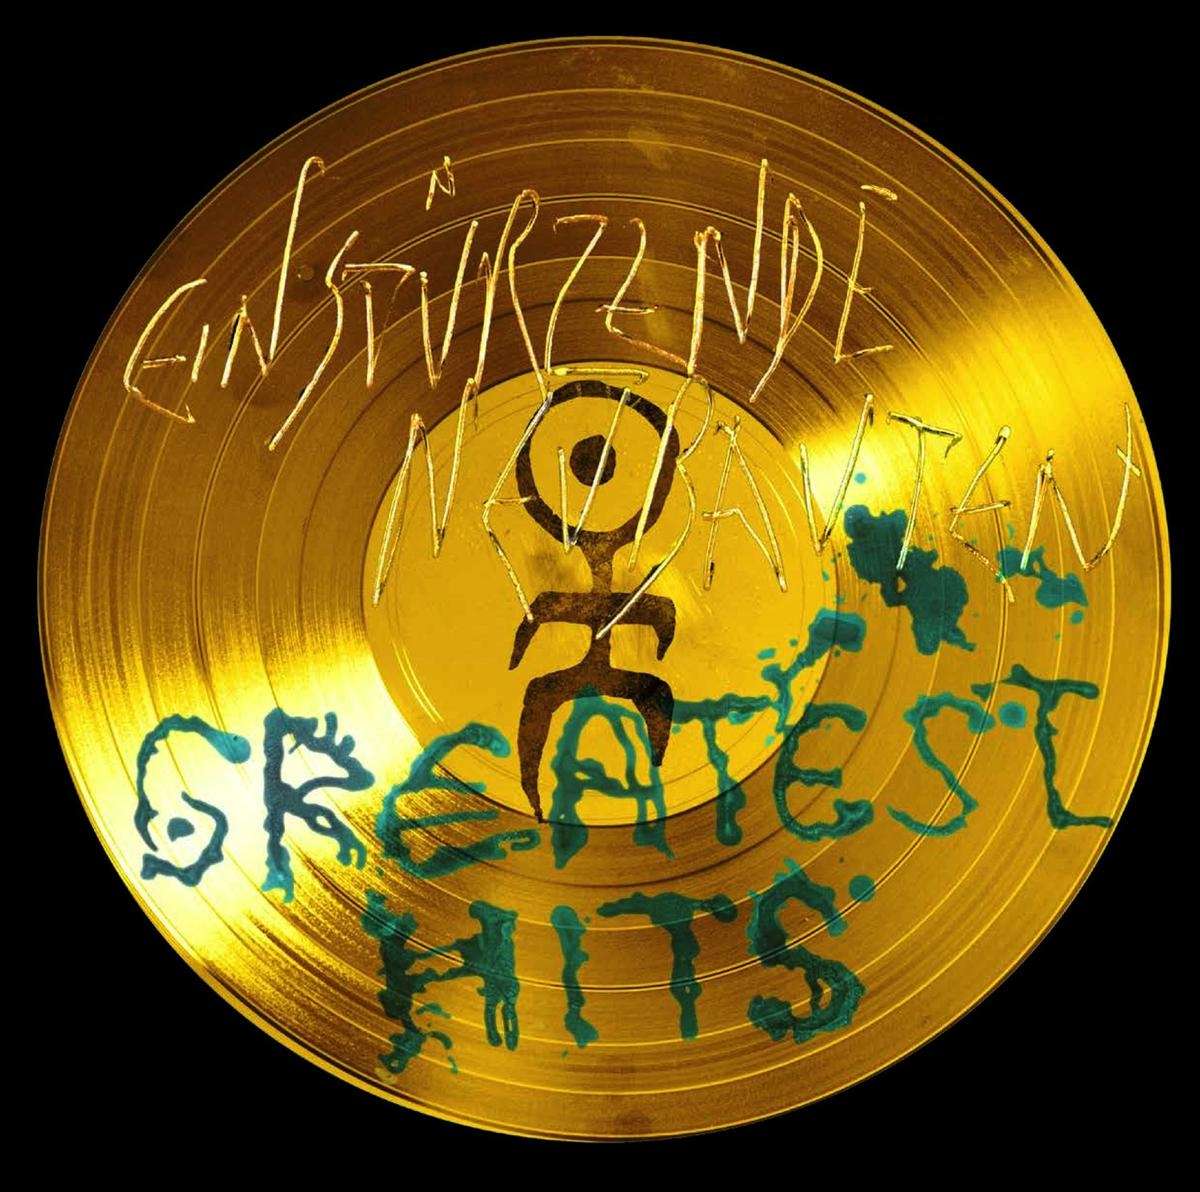 Einsturzende Neubauten - Greatests Hits - 33RPM